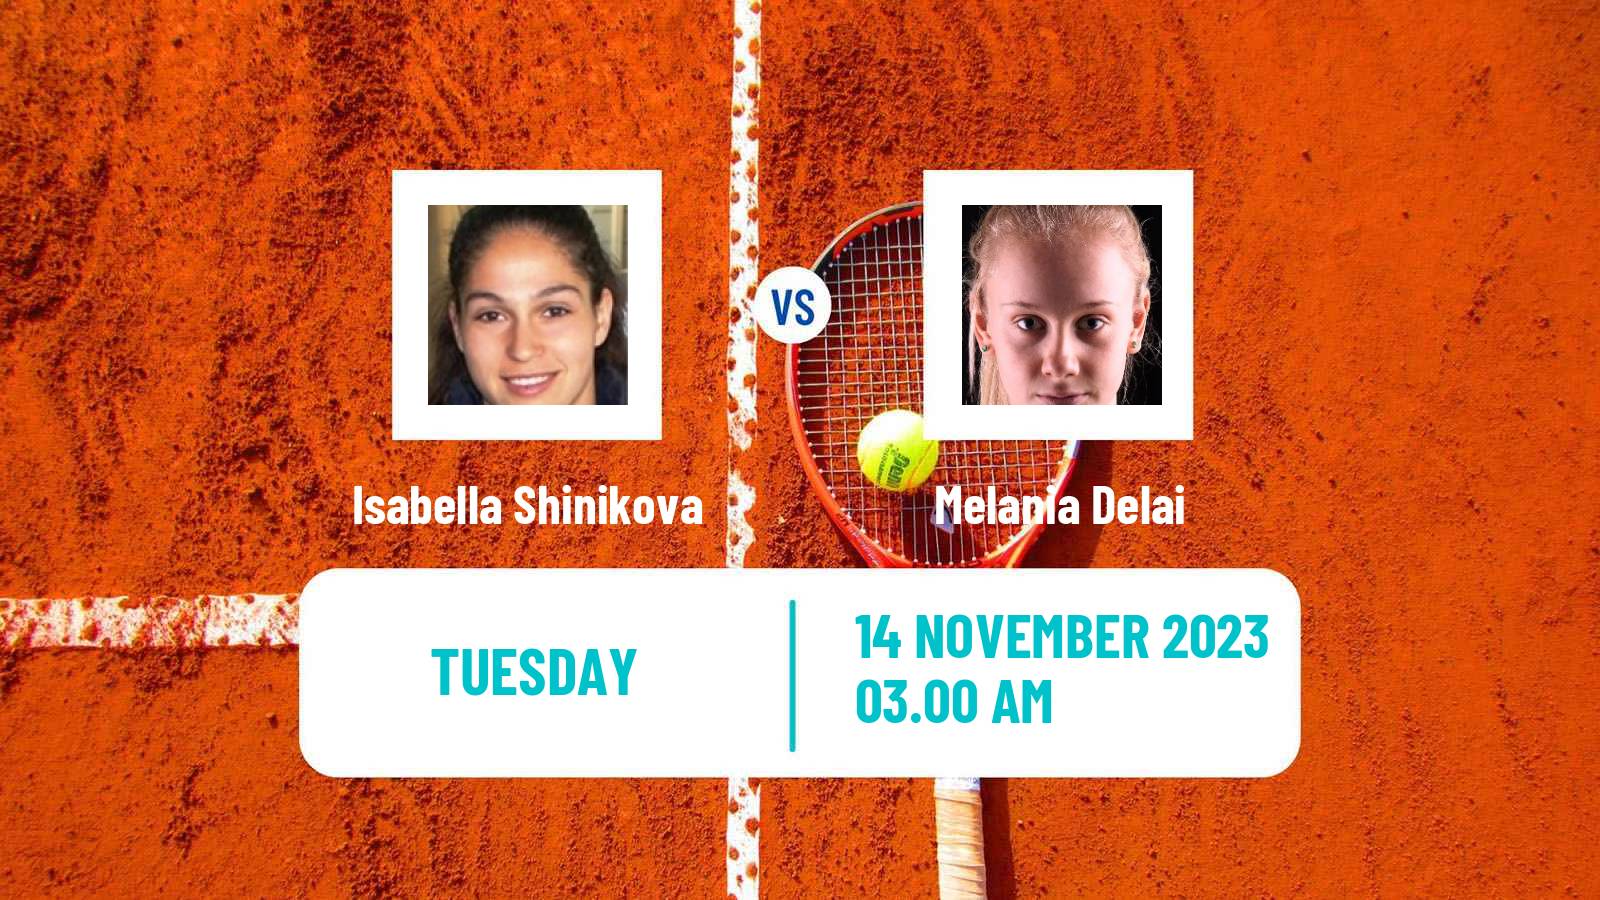 Tennis ITF W25 Solarino 3 Women Isabella Shinikova - Melania Delai